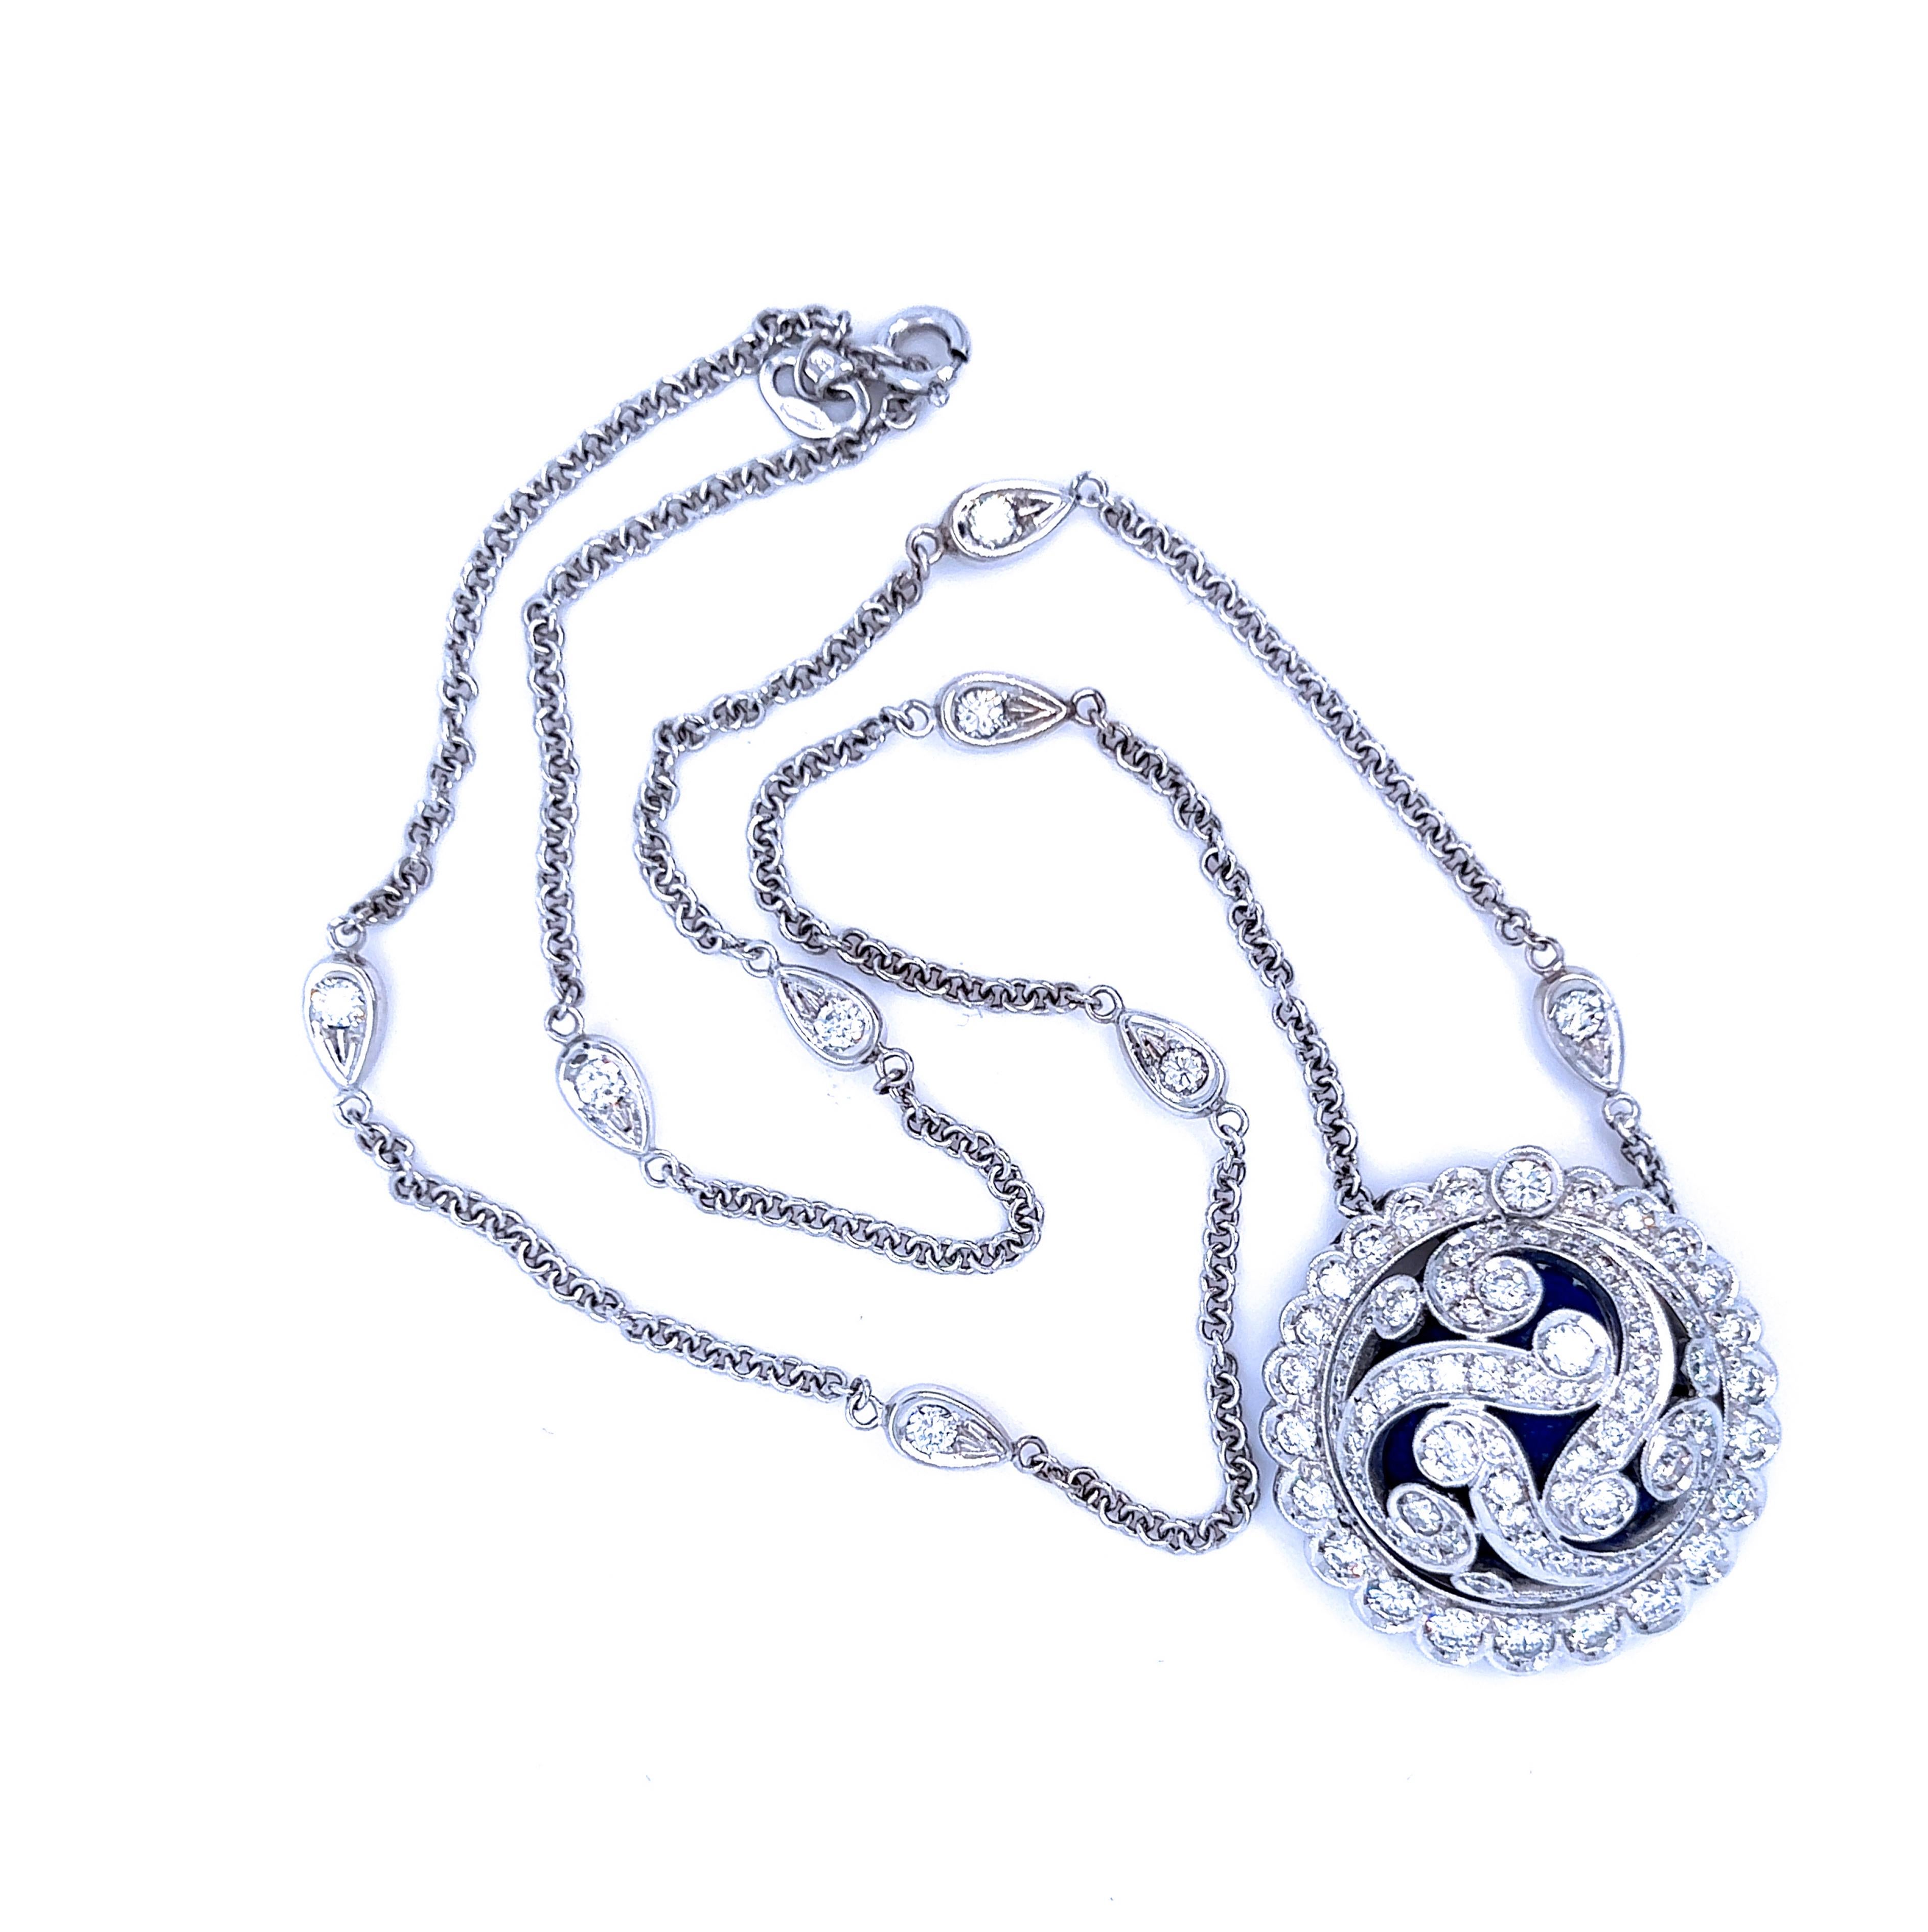 Unique en son genre  pièce, pure, intemporelle, de style Art déco. 
Le cabochon bleu royal émaillé à la main rencontre le blanc extra d'un diamant taillé en brillant de première qualité : 2,80Kt (D-E, VVs1) de diamant blanc dans une monture en or